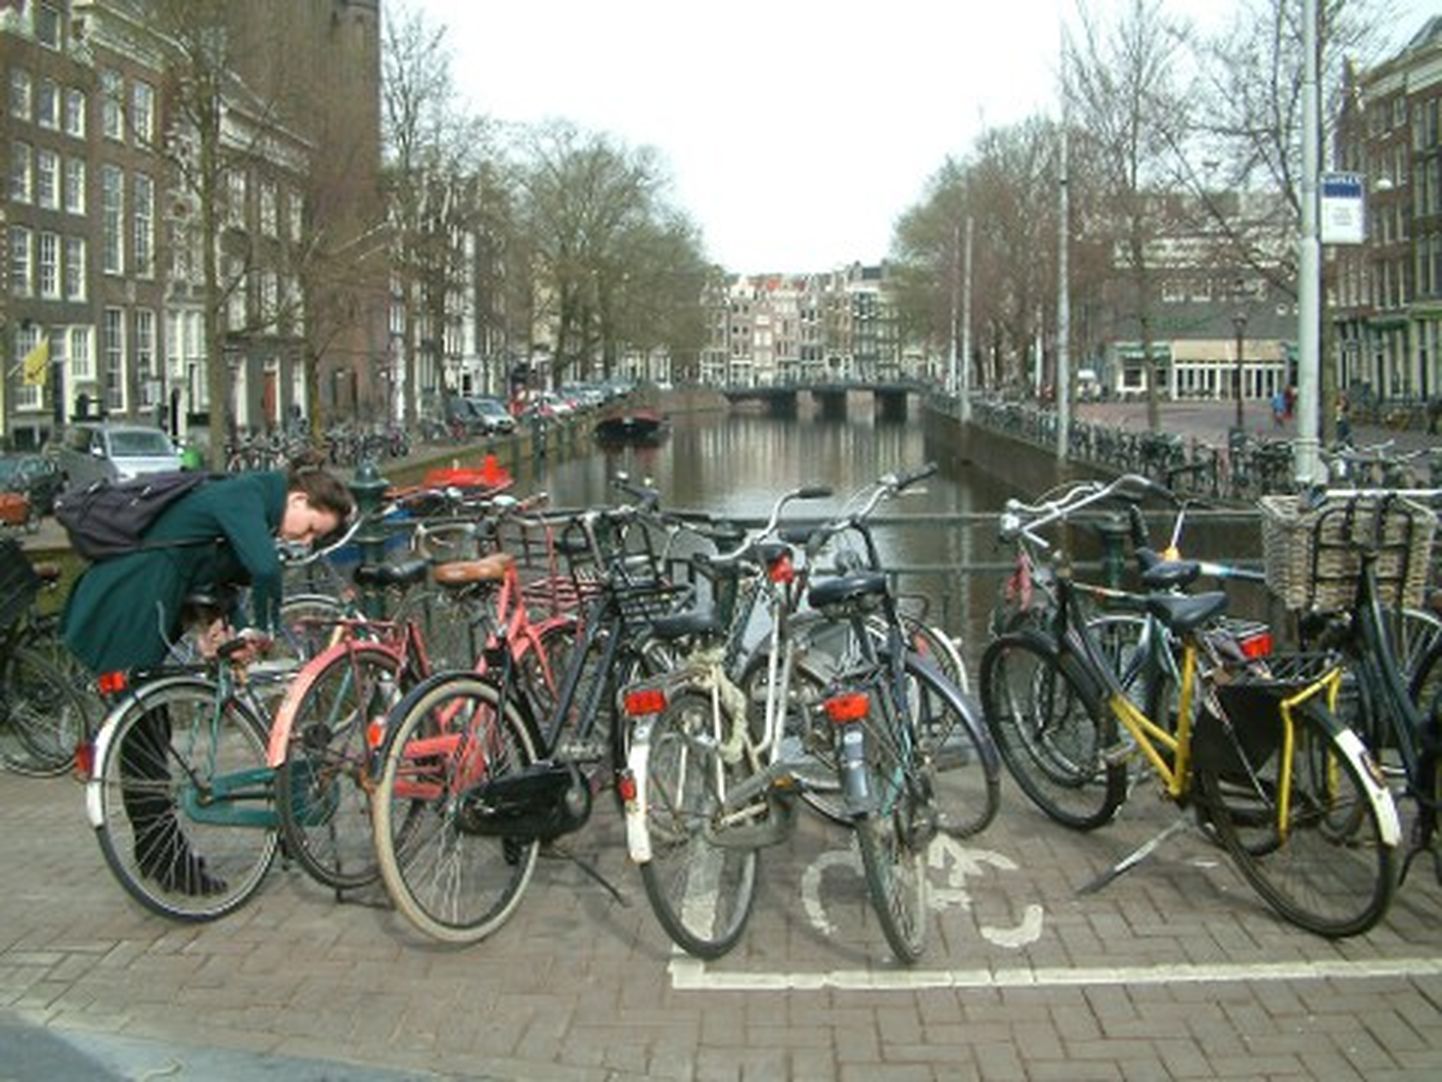 Jalgrattaid on täis kogu Amsterdam. Mida leitakse linna kanalitest nende puhastamise ajal kõige rohkem? Õige vastus on jällegi: jalgrattaid.